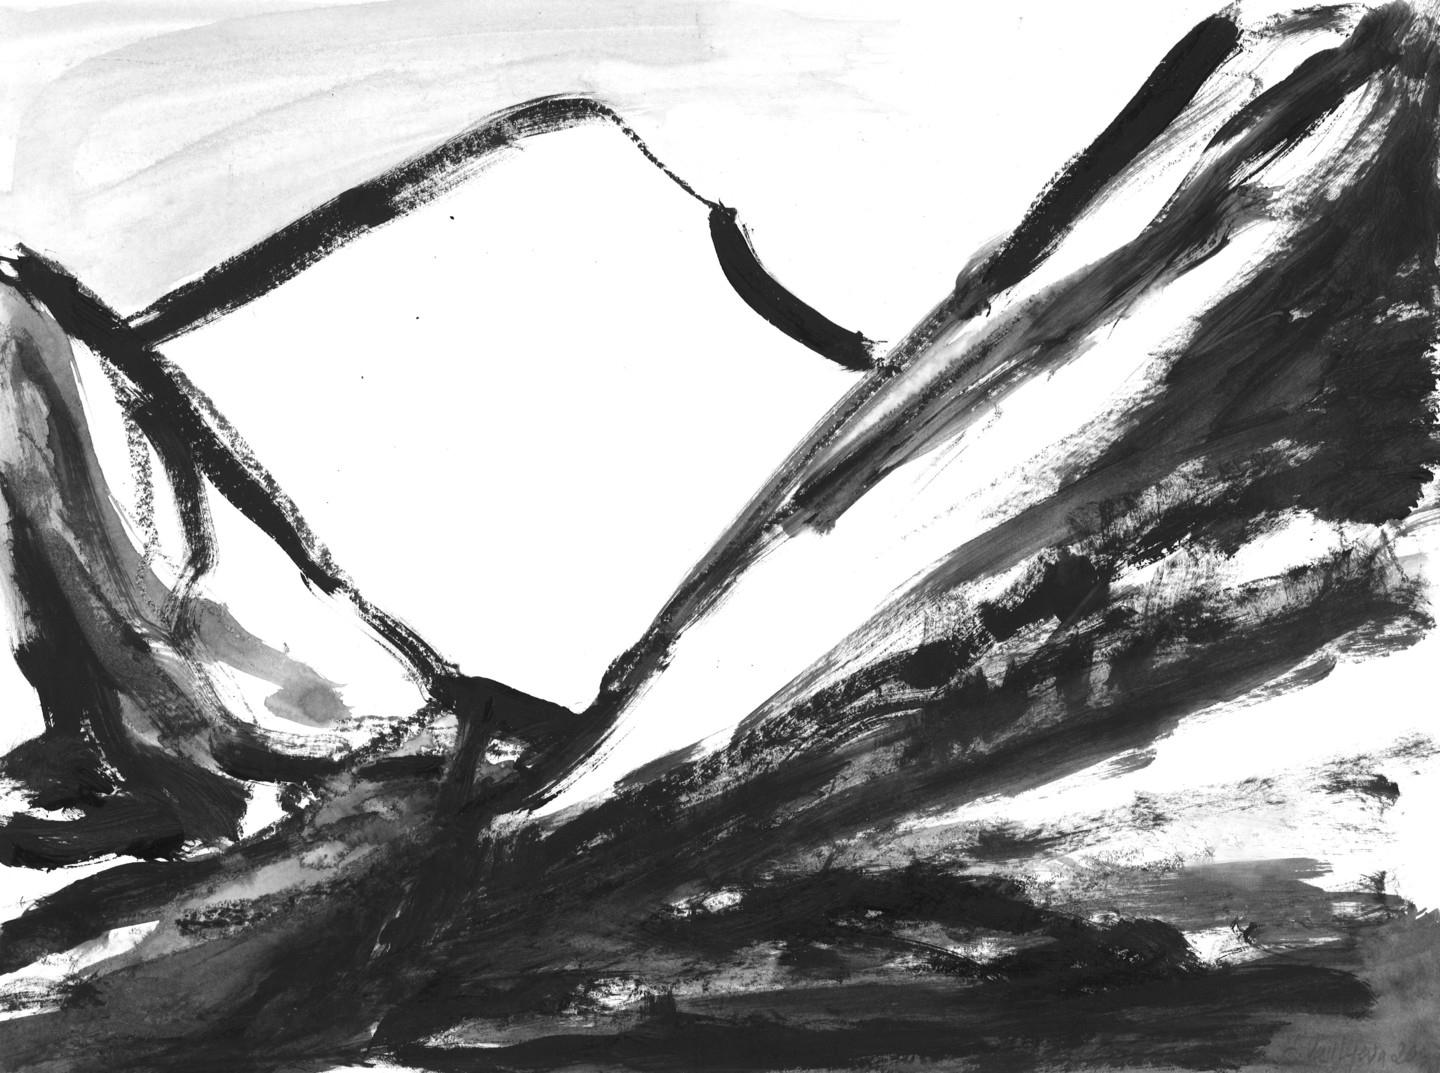 Berge 005, Gemälde von Anastasia Vasilyeva, 2020